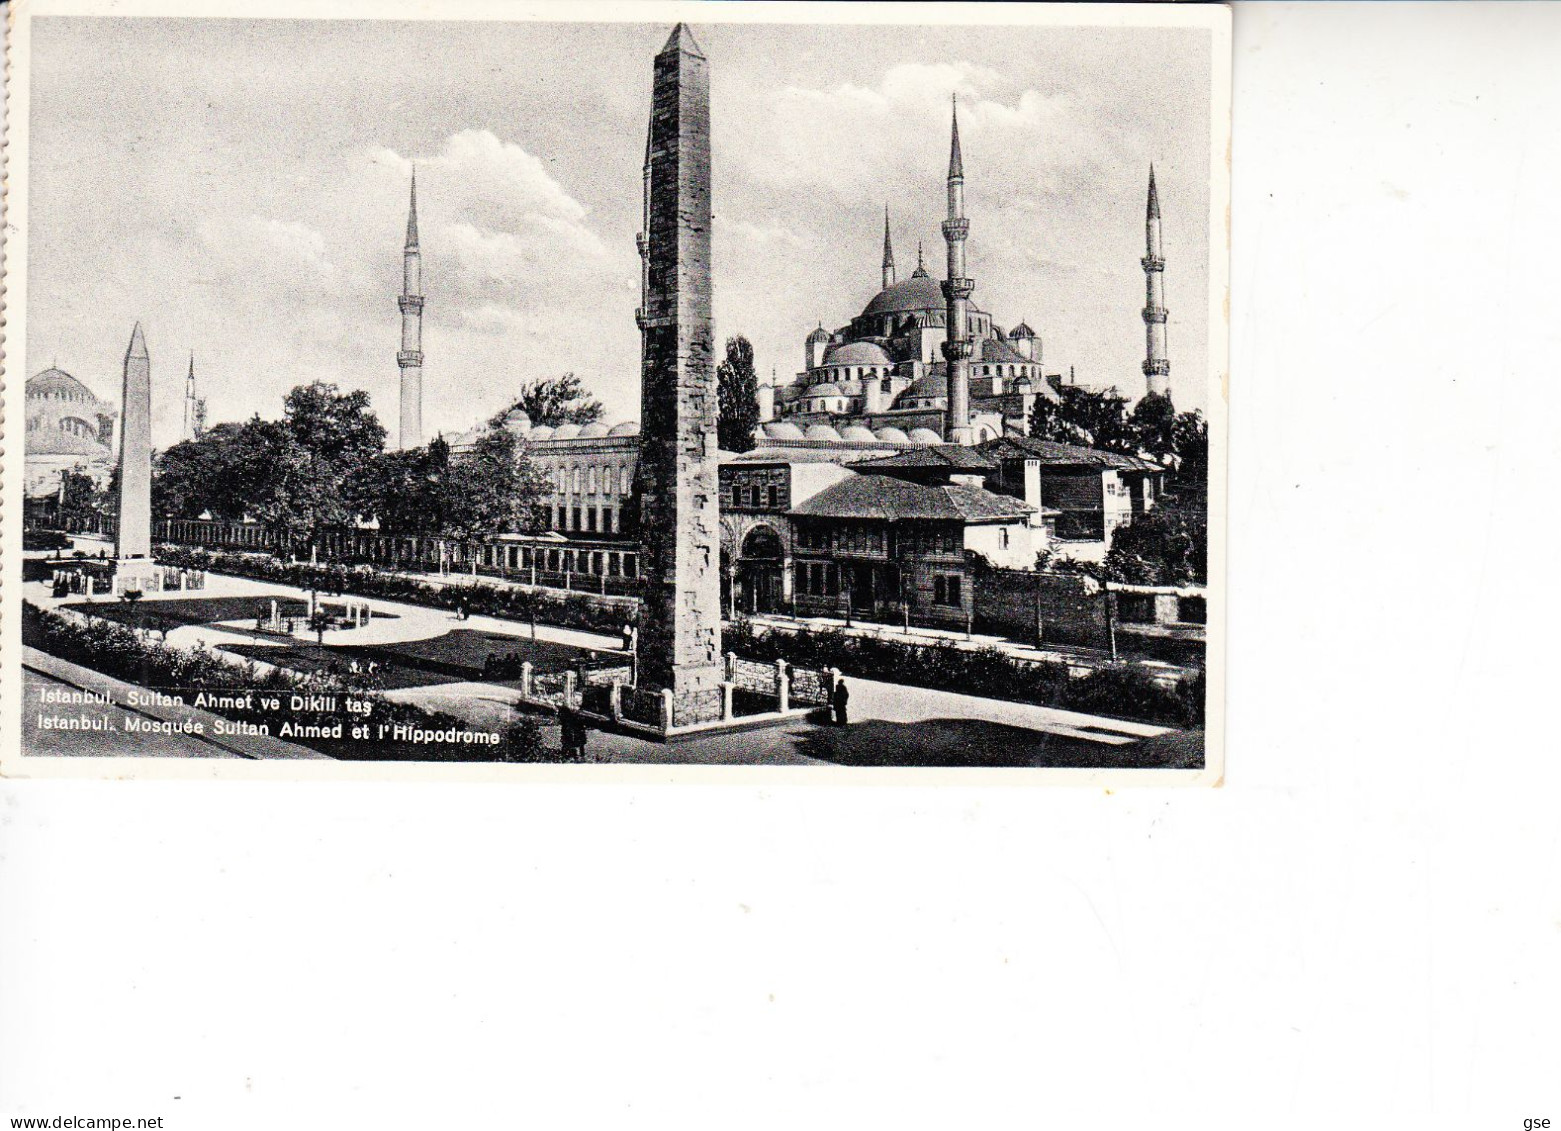 TUECHIA  1946 - Cartolina Per Zurich - Brieven En Documenten